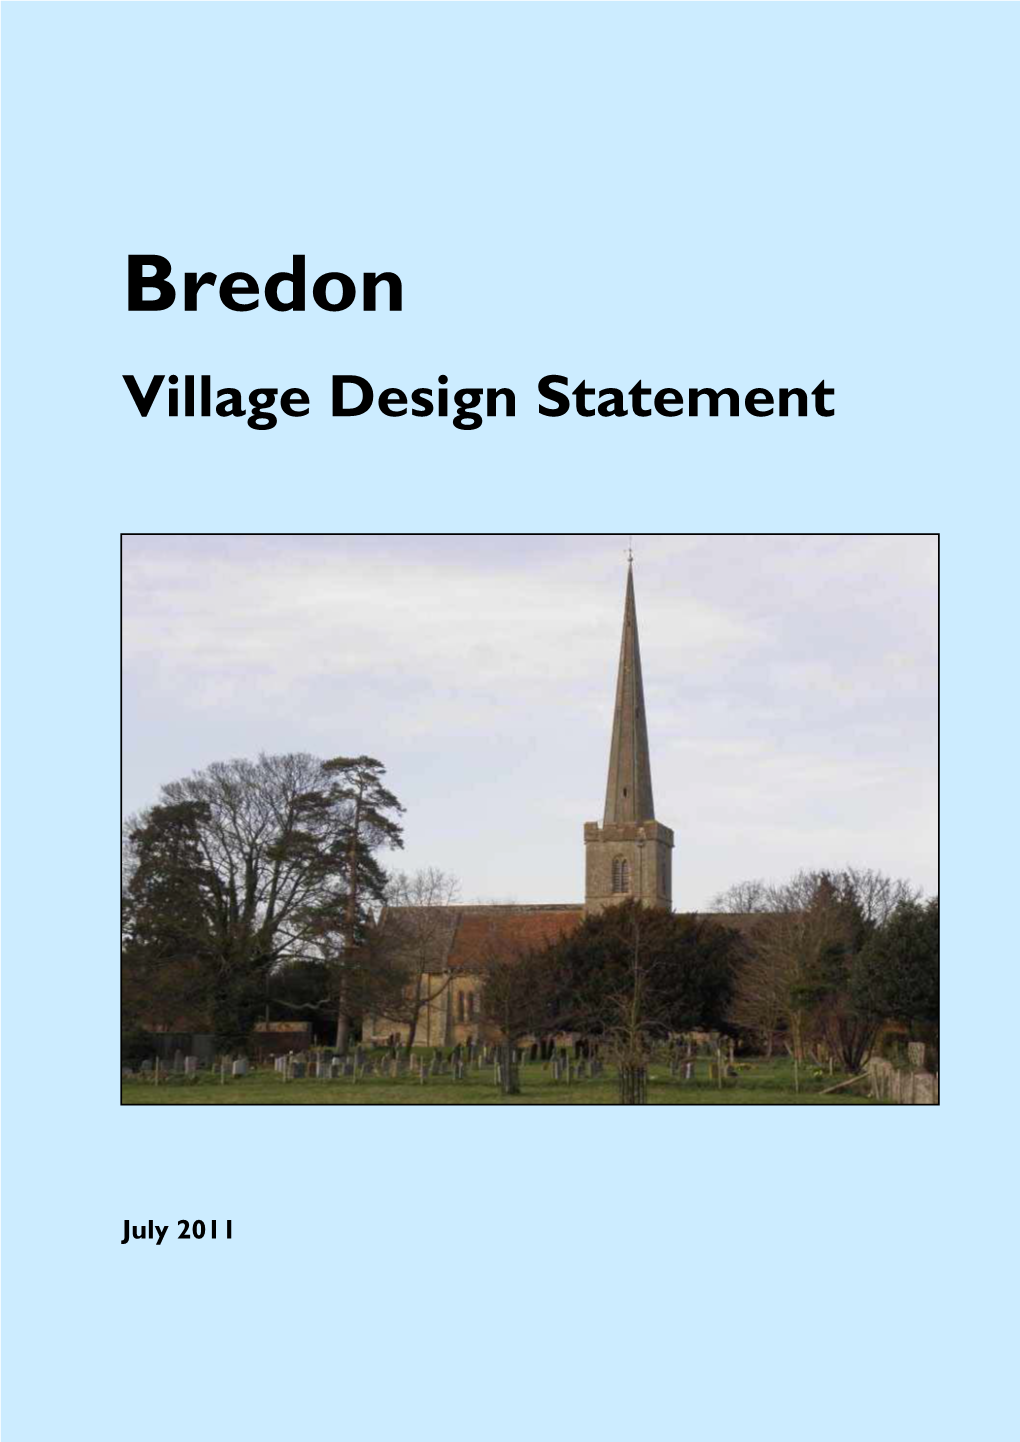 Download (Bredon-Village-Design-Statement